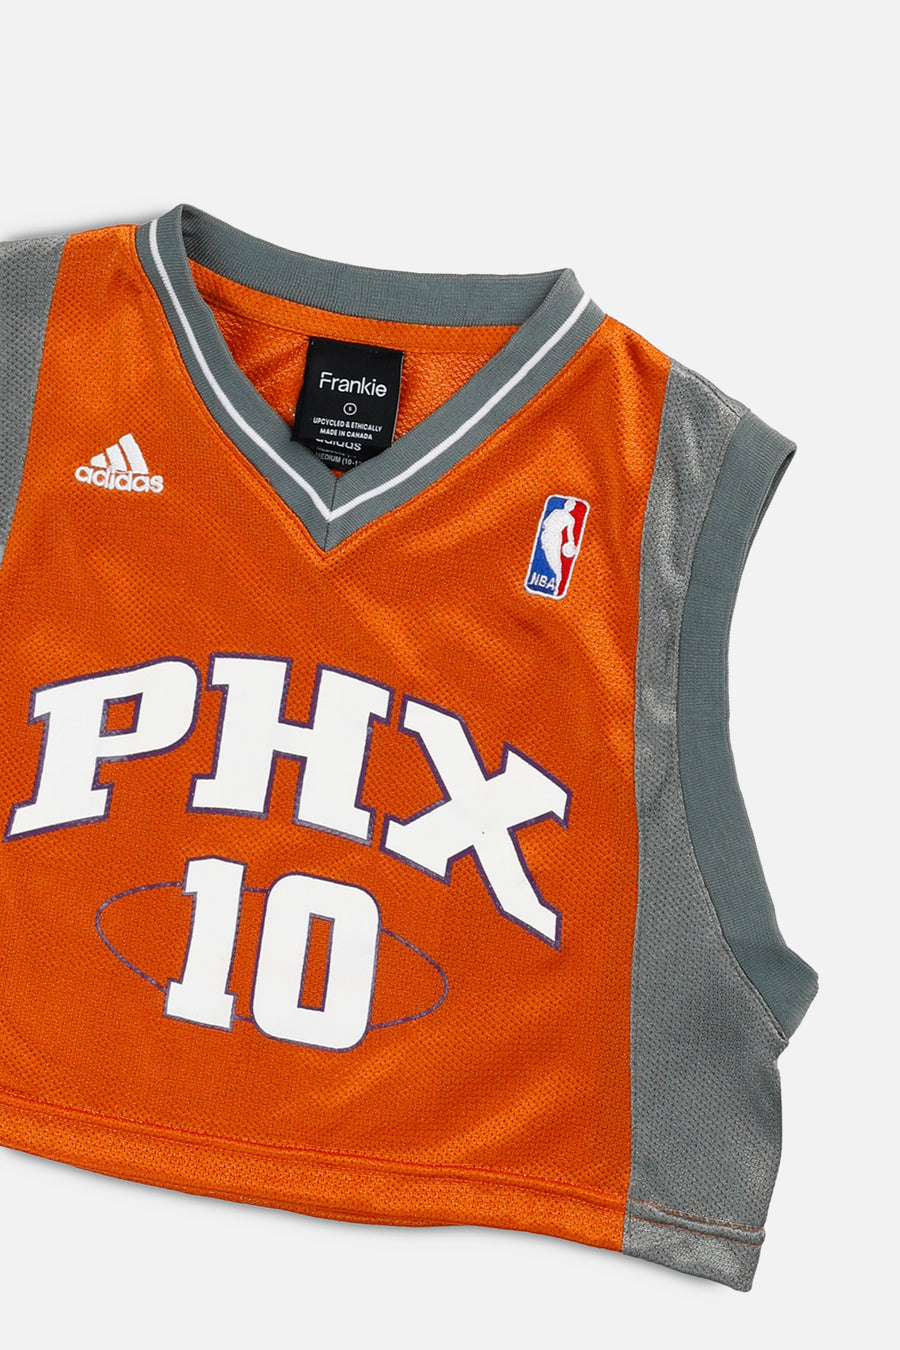 Rework Phoenix Suns NBA Crop Jersey - S